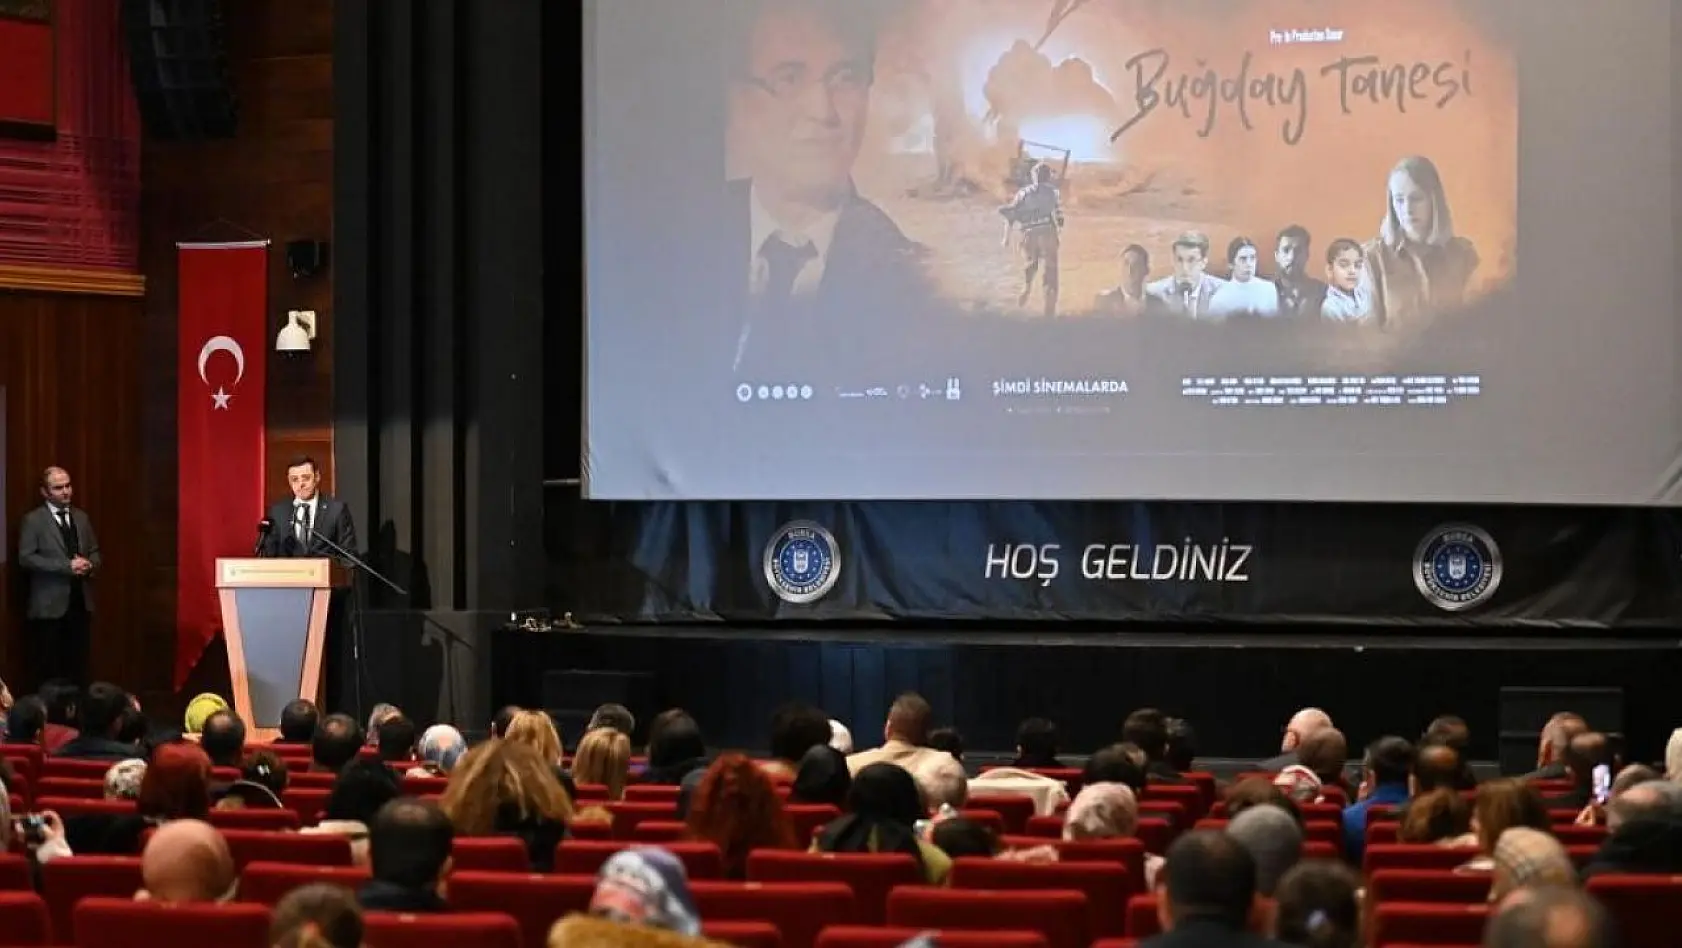 Milletvekili Serkan Bayram'ın hayatını konu alan 'Buğday Tanesi' filmi Bursa'da ilgiyle izlendi